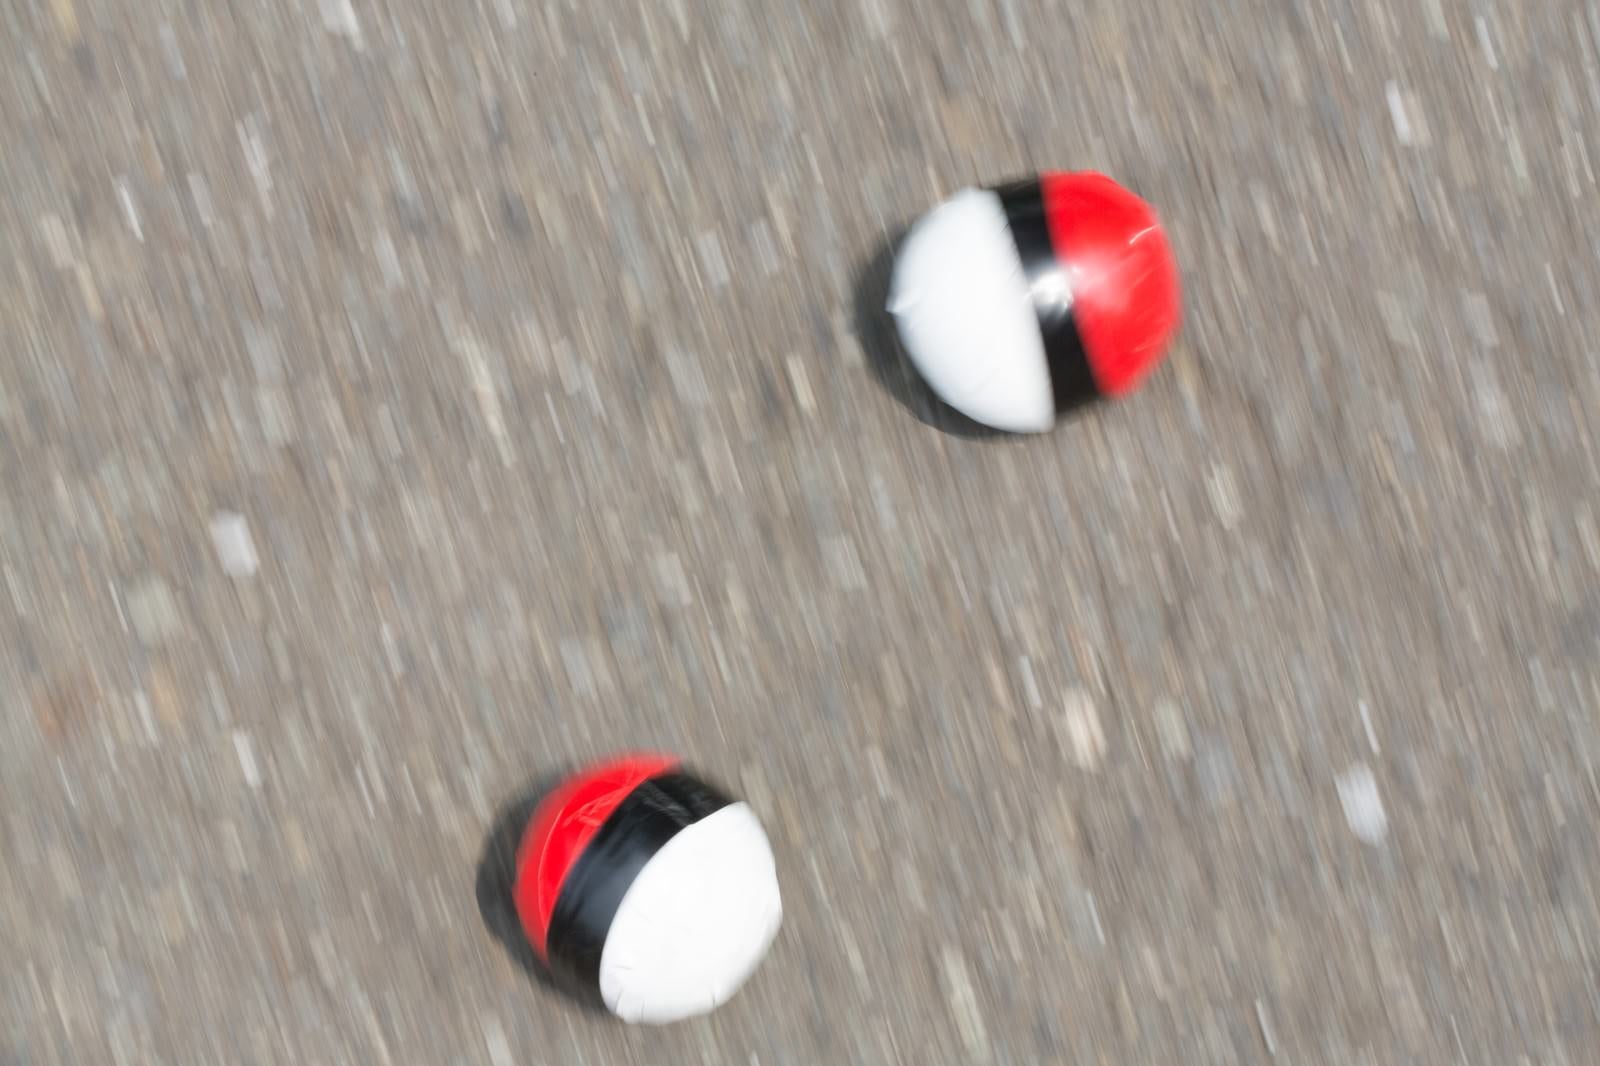 「路上に転がる紅白ボール」の写真